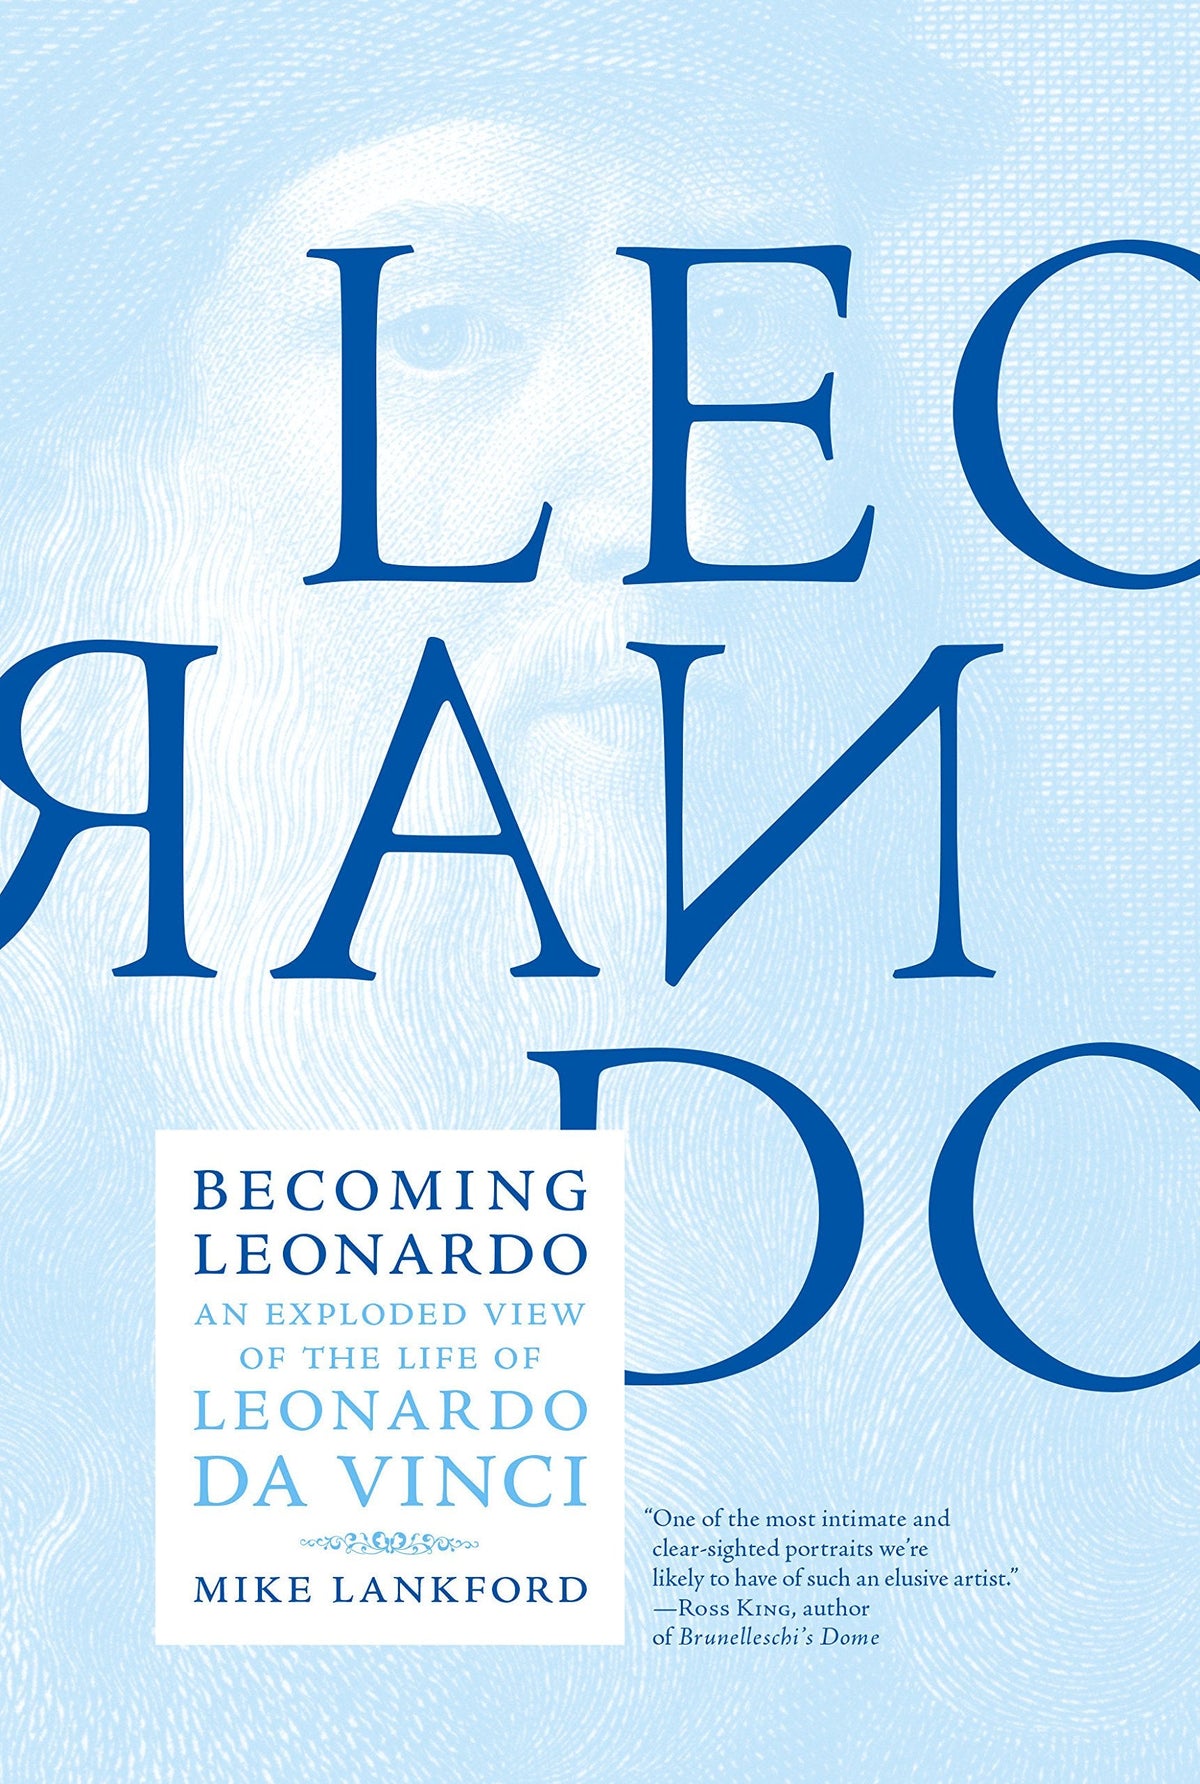 Becoming Leonardo: An Exploded View of the Life of Leonardo da Vinci